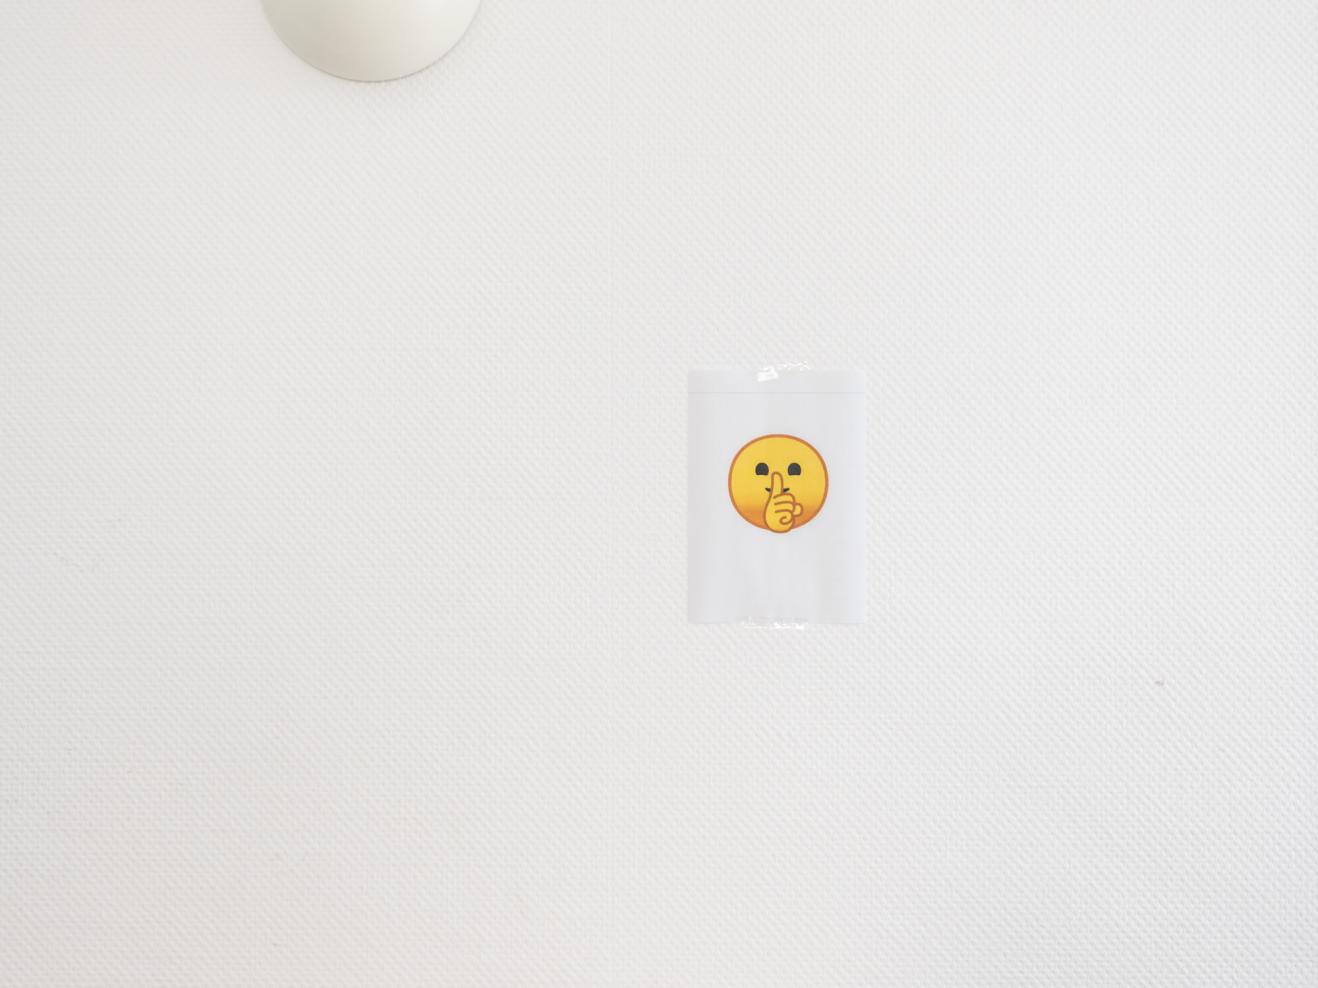 Ein Zettel mit einem gelben Emoji mit Finger auf dem Mund hängt an einer weißen Wand